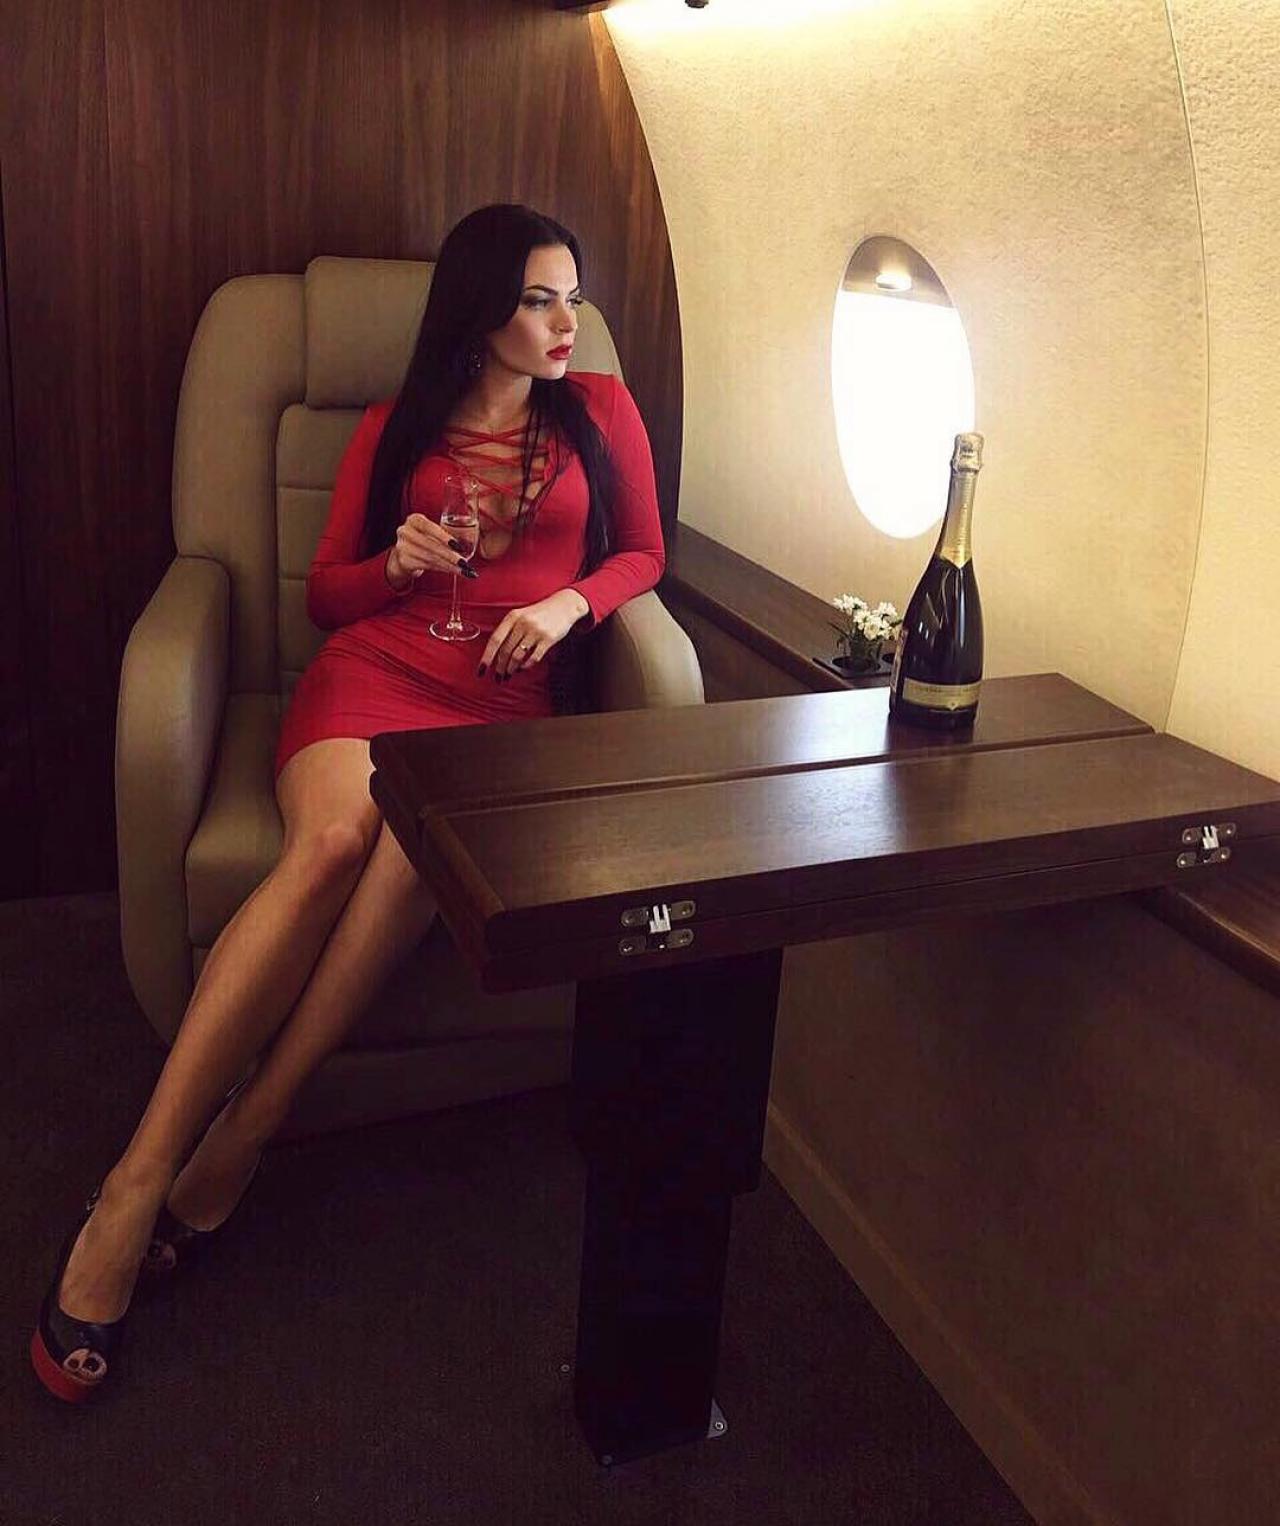 Когда розы в аренду уже не тренд: в Москве за 14 тысяч рублей можно арендовать частный самолёт для фото в Инстаграм